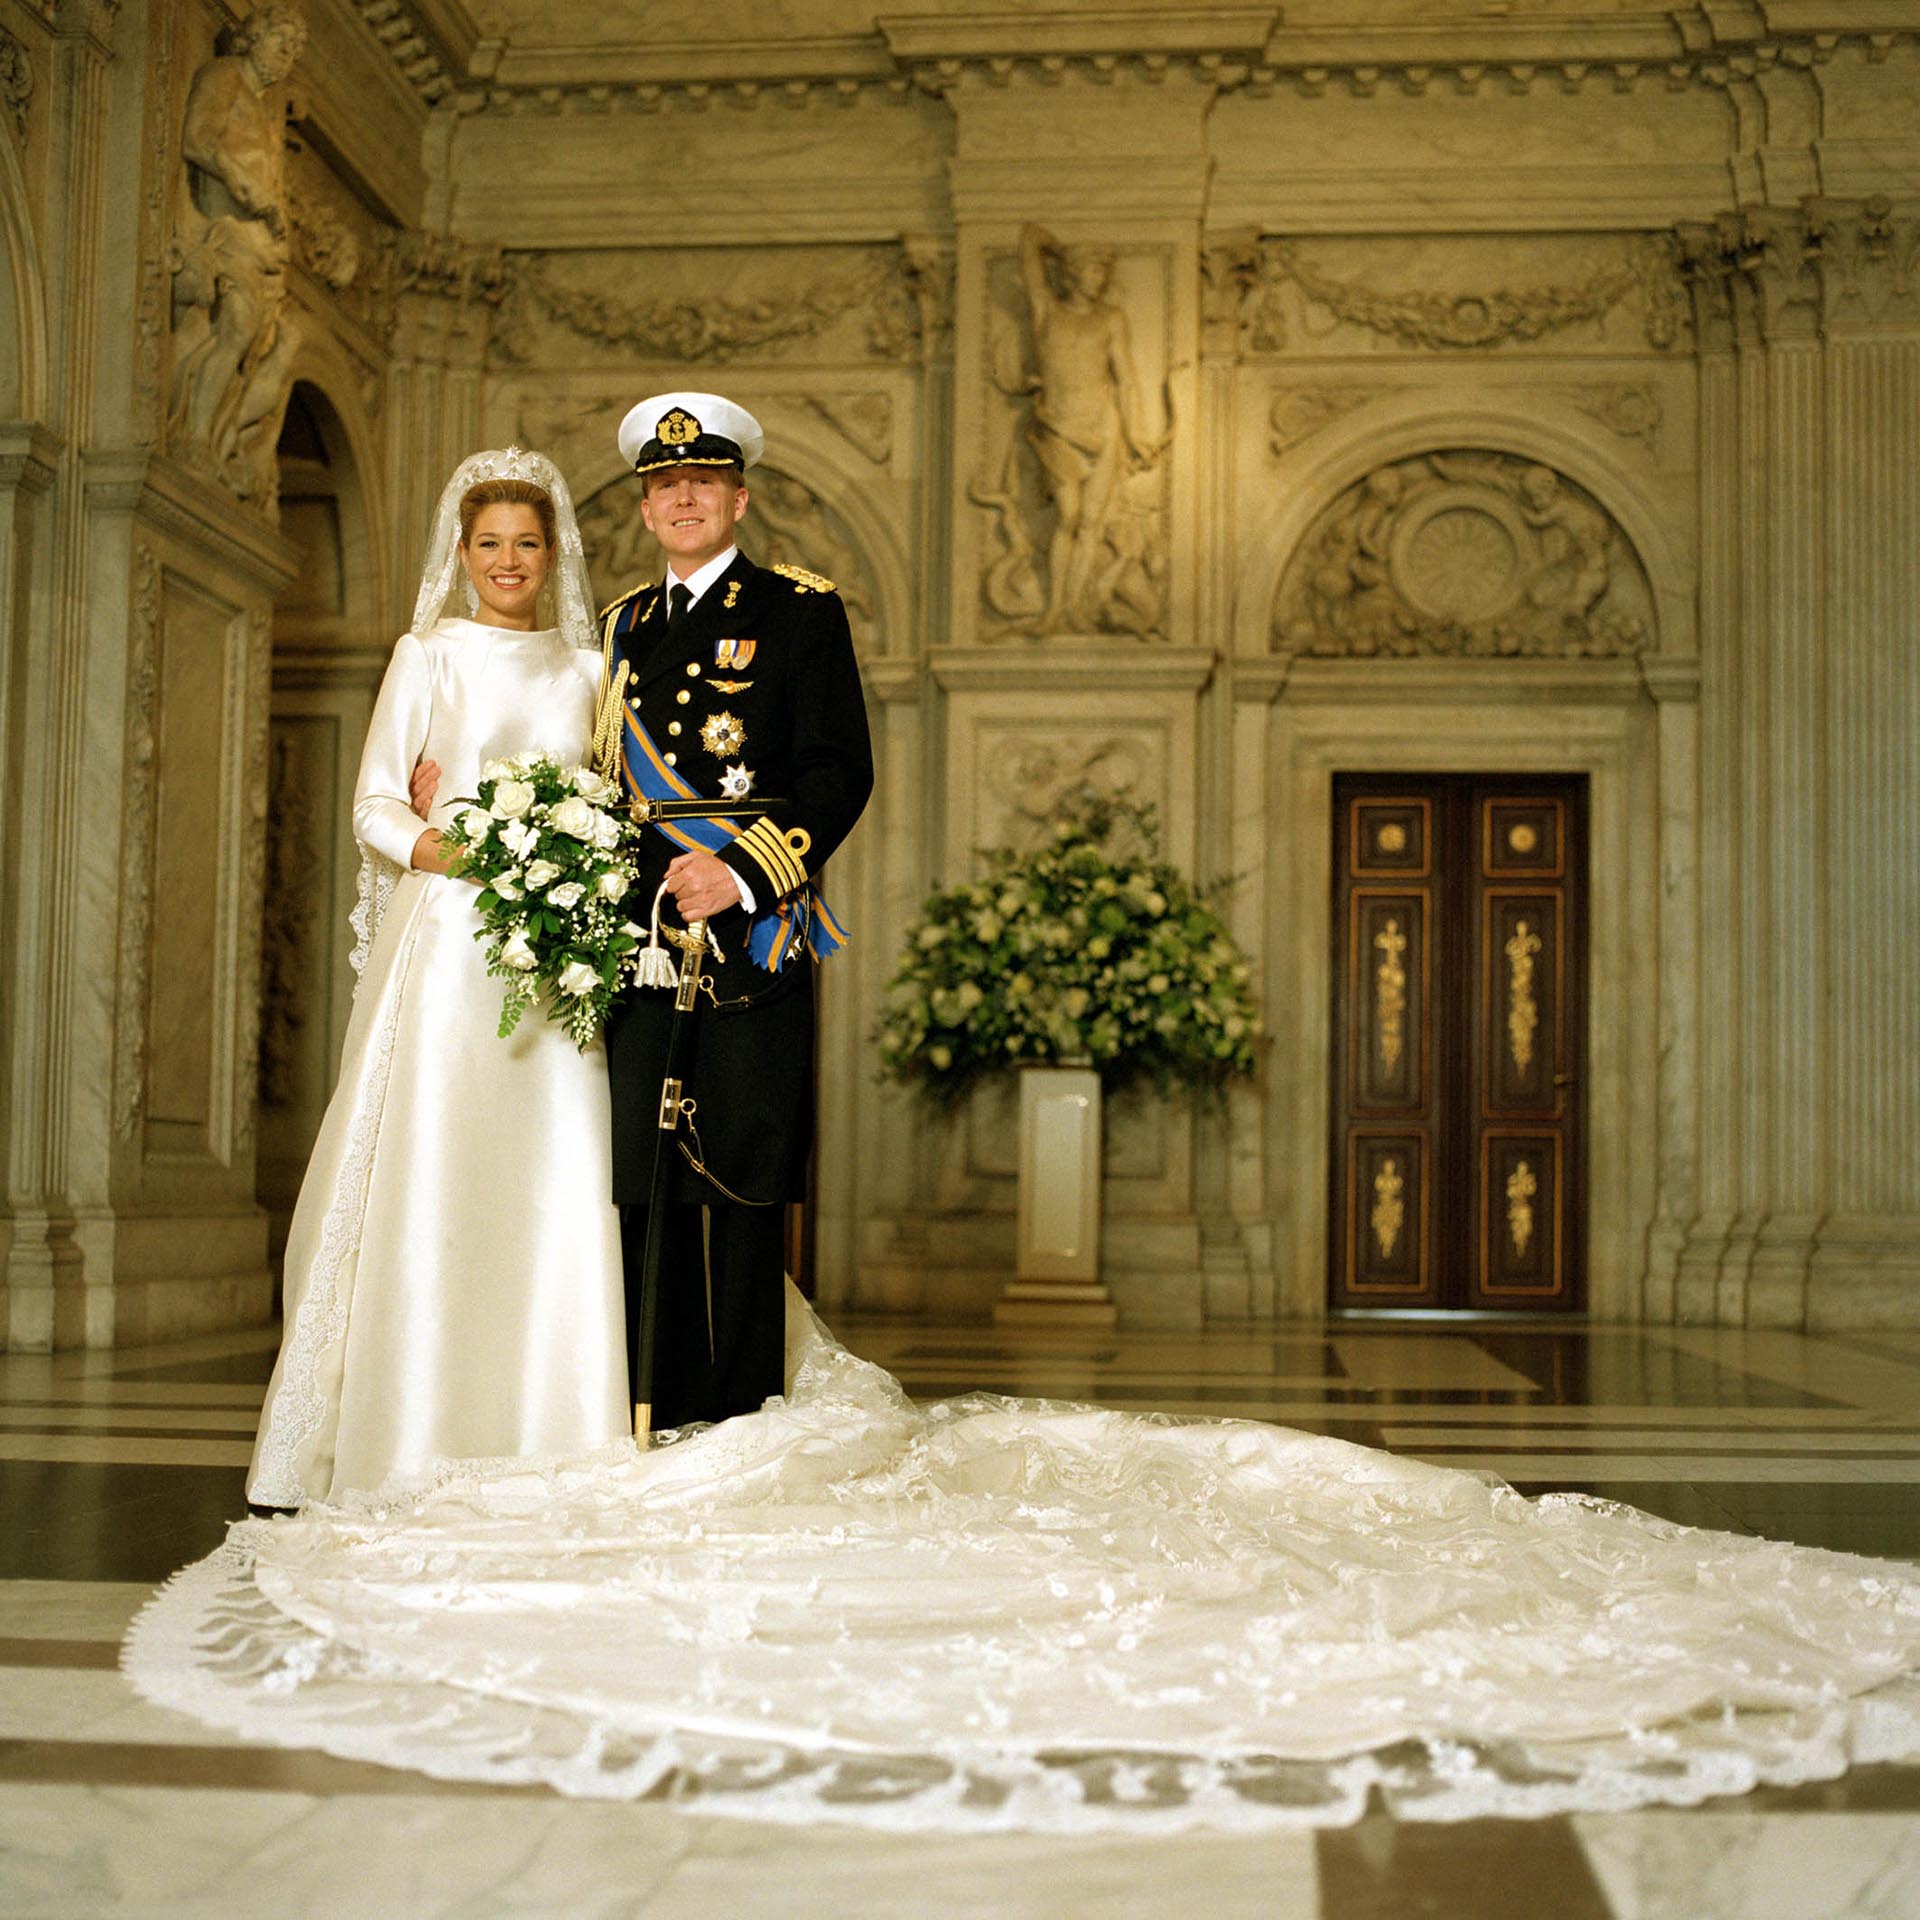 Luego de un apasionado noviazgo de tres años, el 2 de febrero de 2002 Máxima se casó con Guillermo de Holanda, en una espectacular ceremonia religiosa en la catedral medieval de Ámsterdam Nieuwe Kerk y con una fiesta para casi dos mil invitados